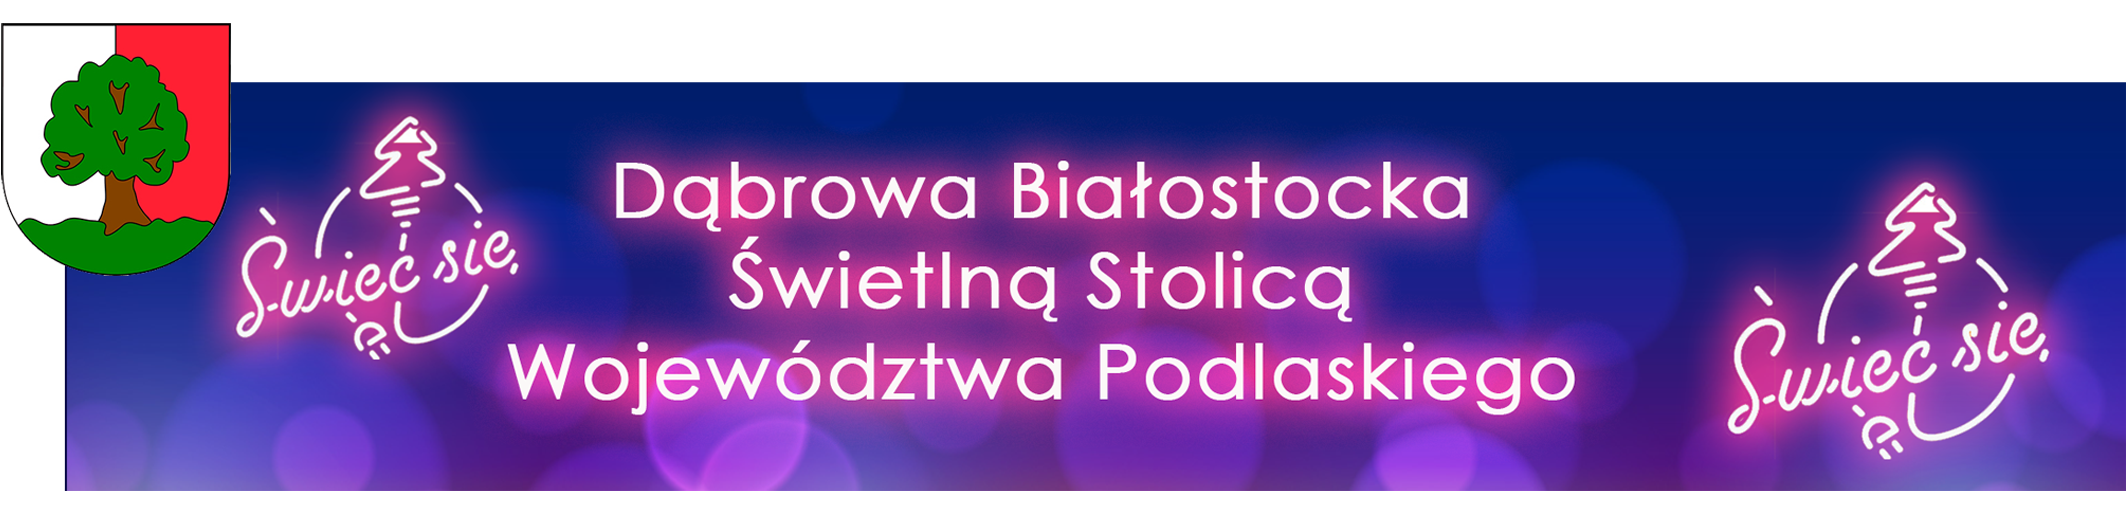 Świetlną Stolicą Województwa Podlaskiego została Dąbrowa Białostocka